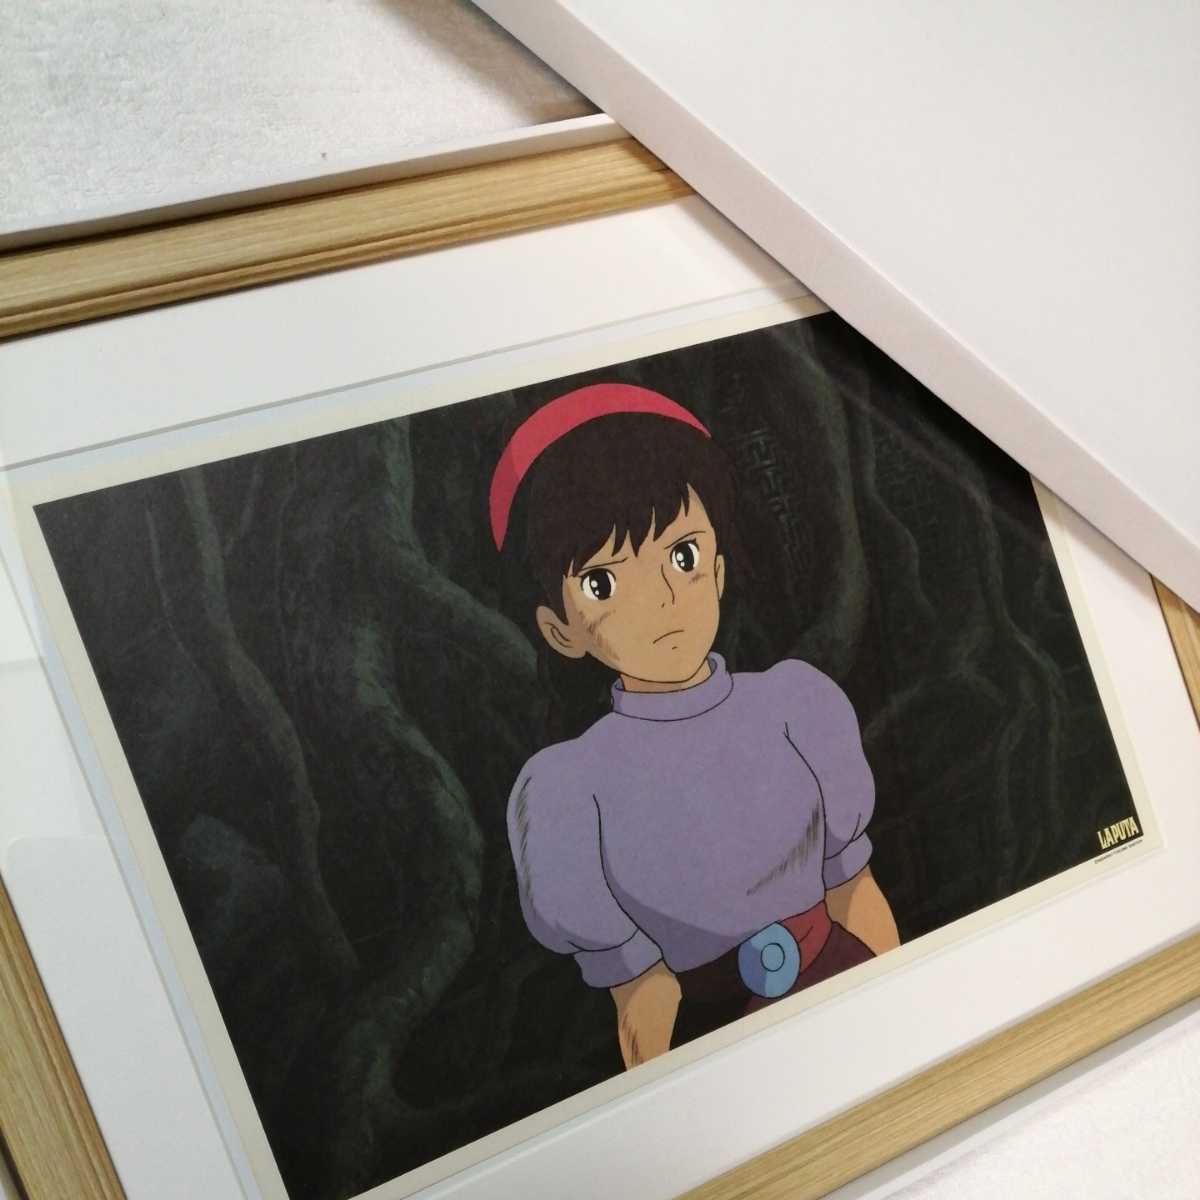 Более 30 лет назад [В то время] Студия Ghibli: Небесный замок [Предмет в рамке] Постер, настенная картина, оригинальная репродукция, осмотр) чел., открытка, Хаяо Миядзаки г, комиксы, аниме товары, другие